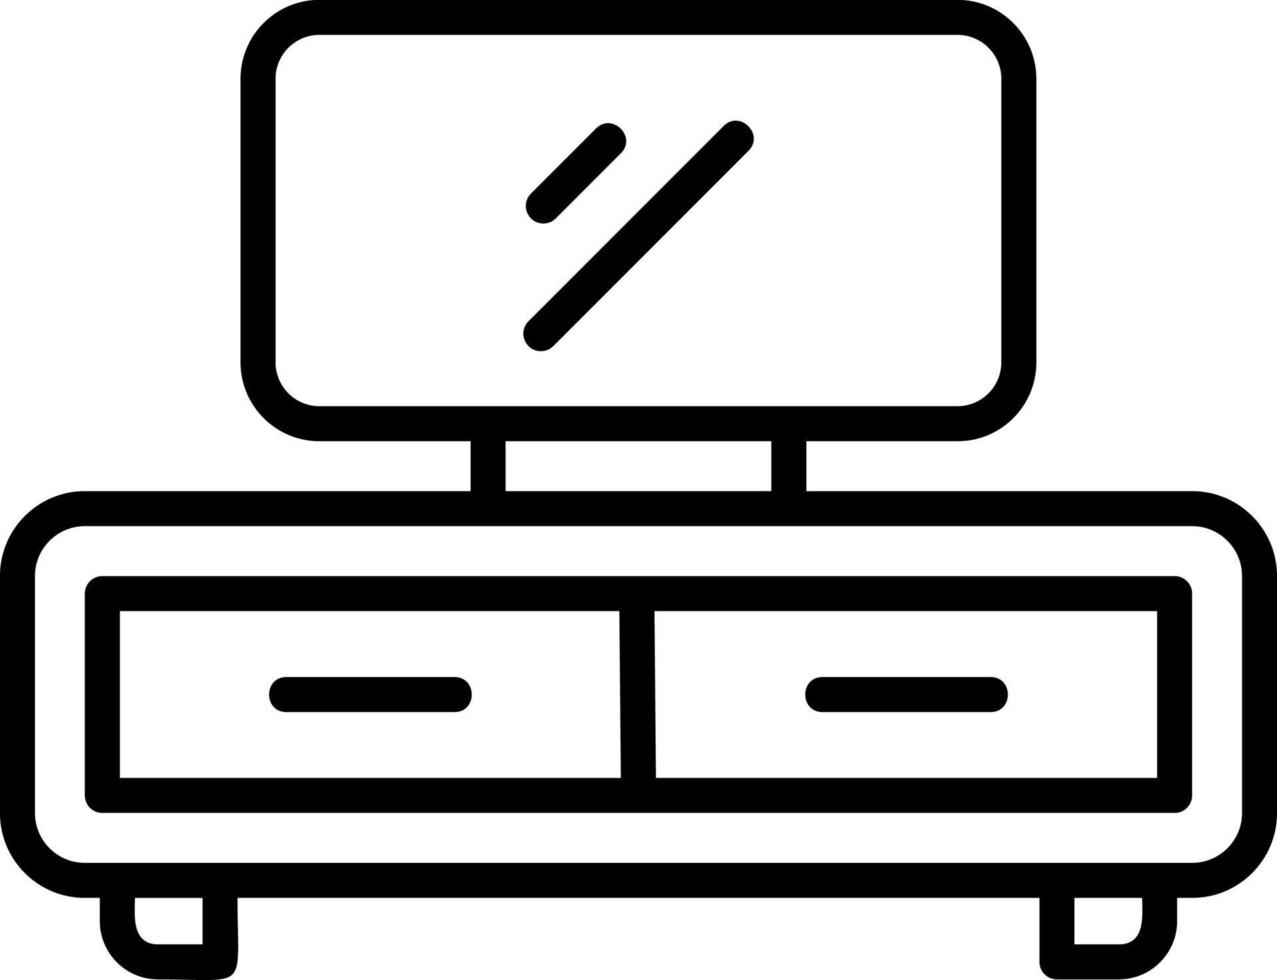 TV tafel vector icoon ontwerp